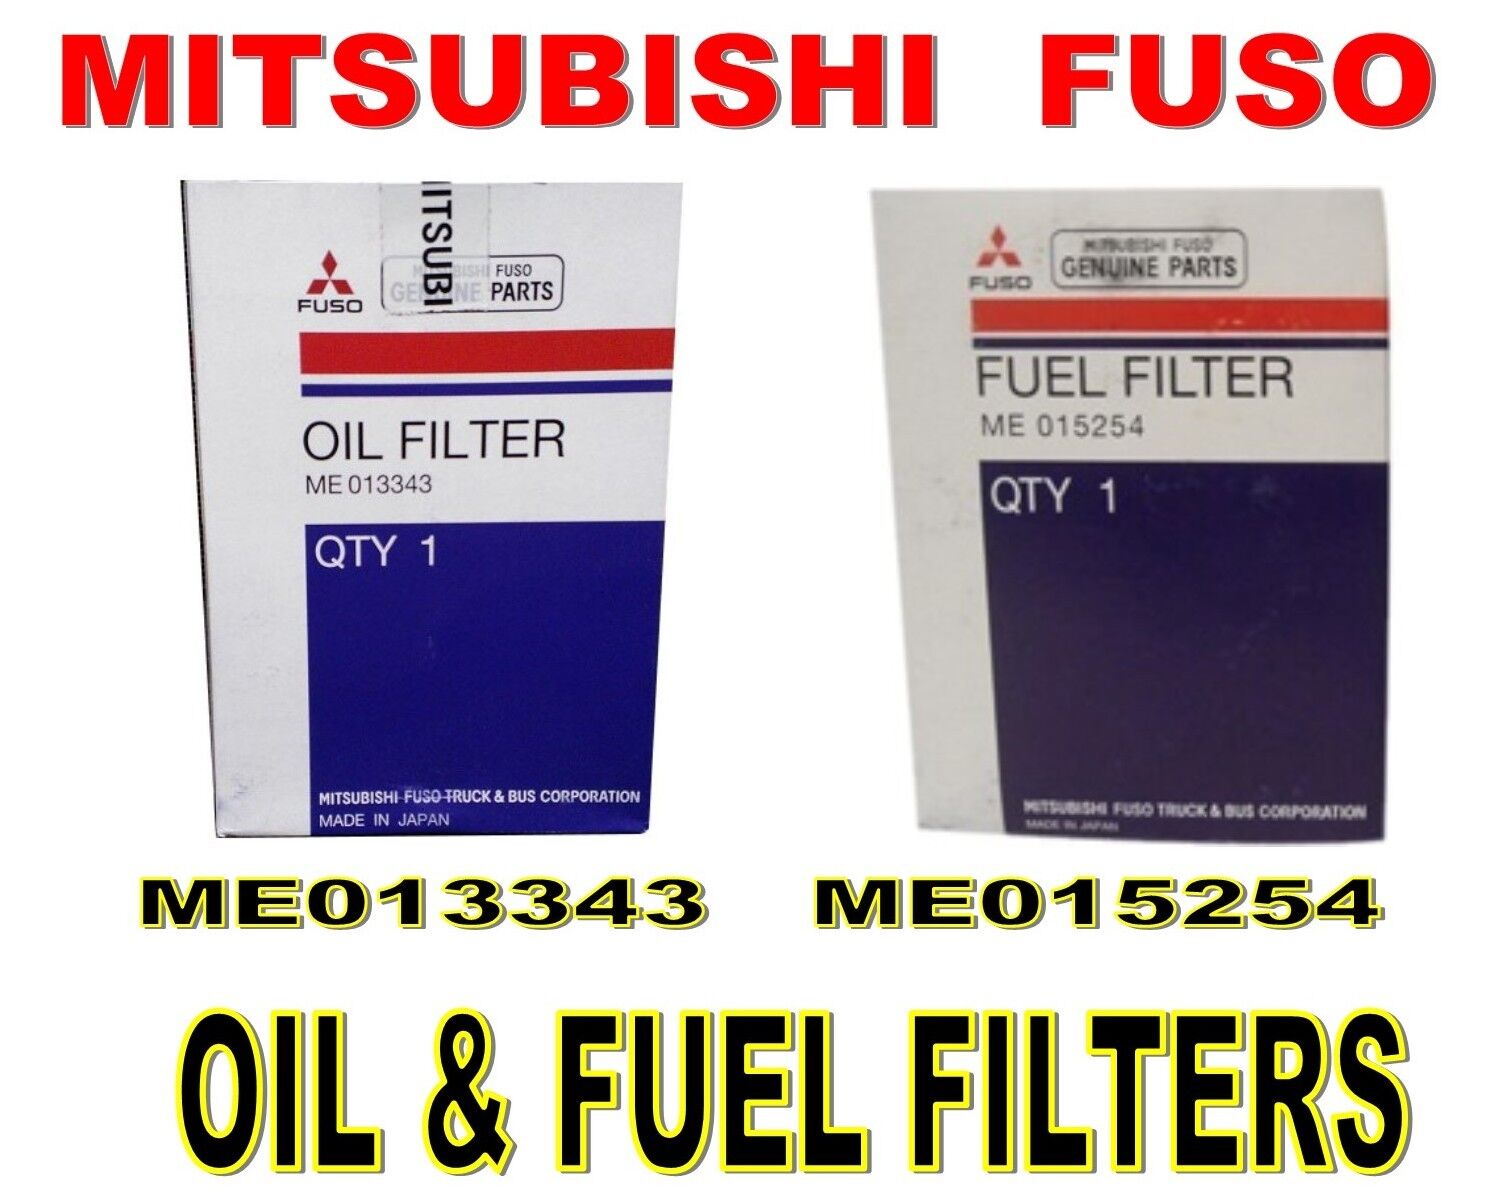 MITSUBISHI FUSO FUEL & OIL FILTER KIT  FE/FG 1992-2004 ME013343 & ME015254